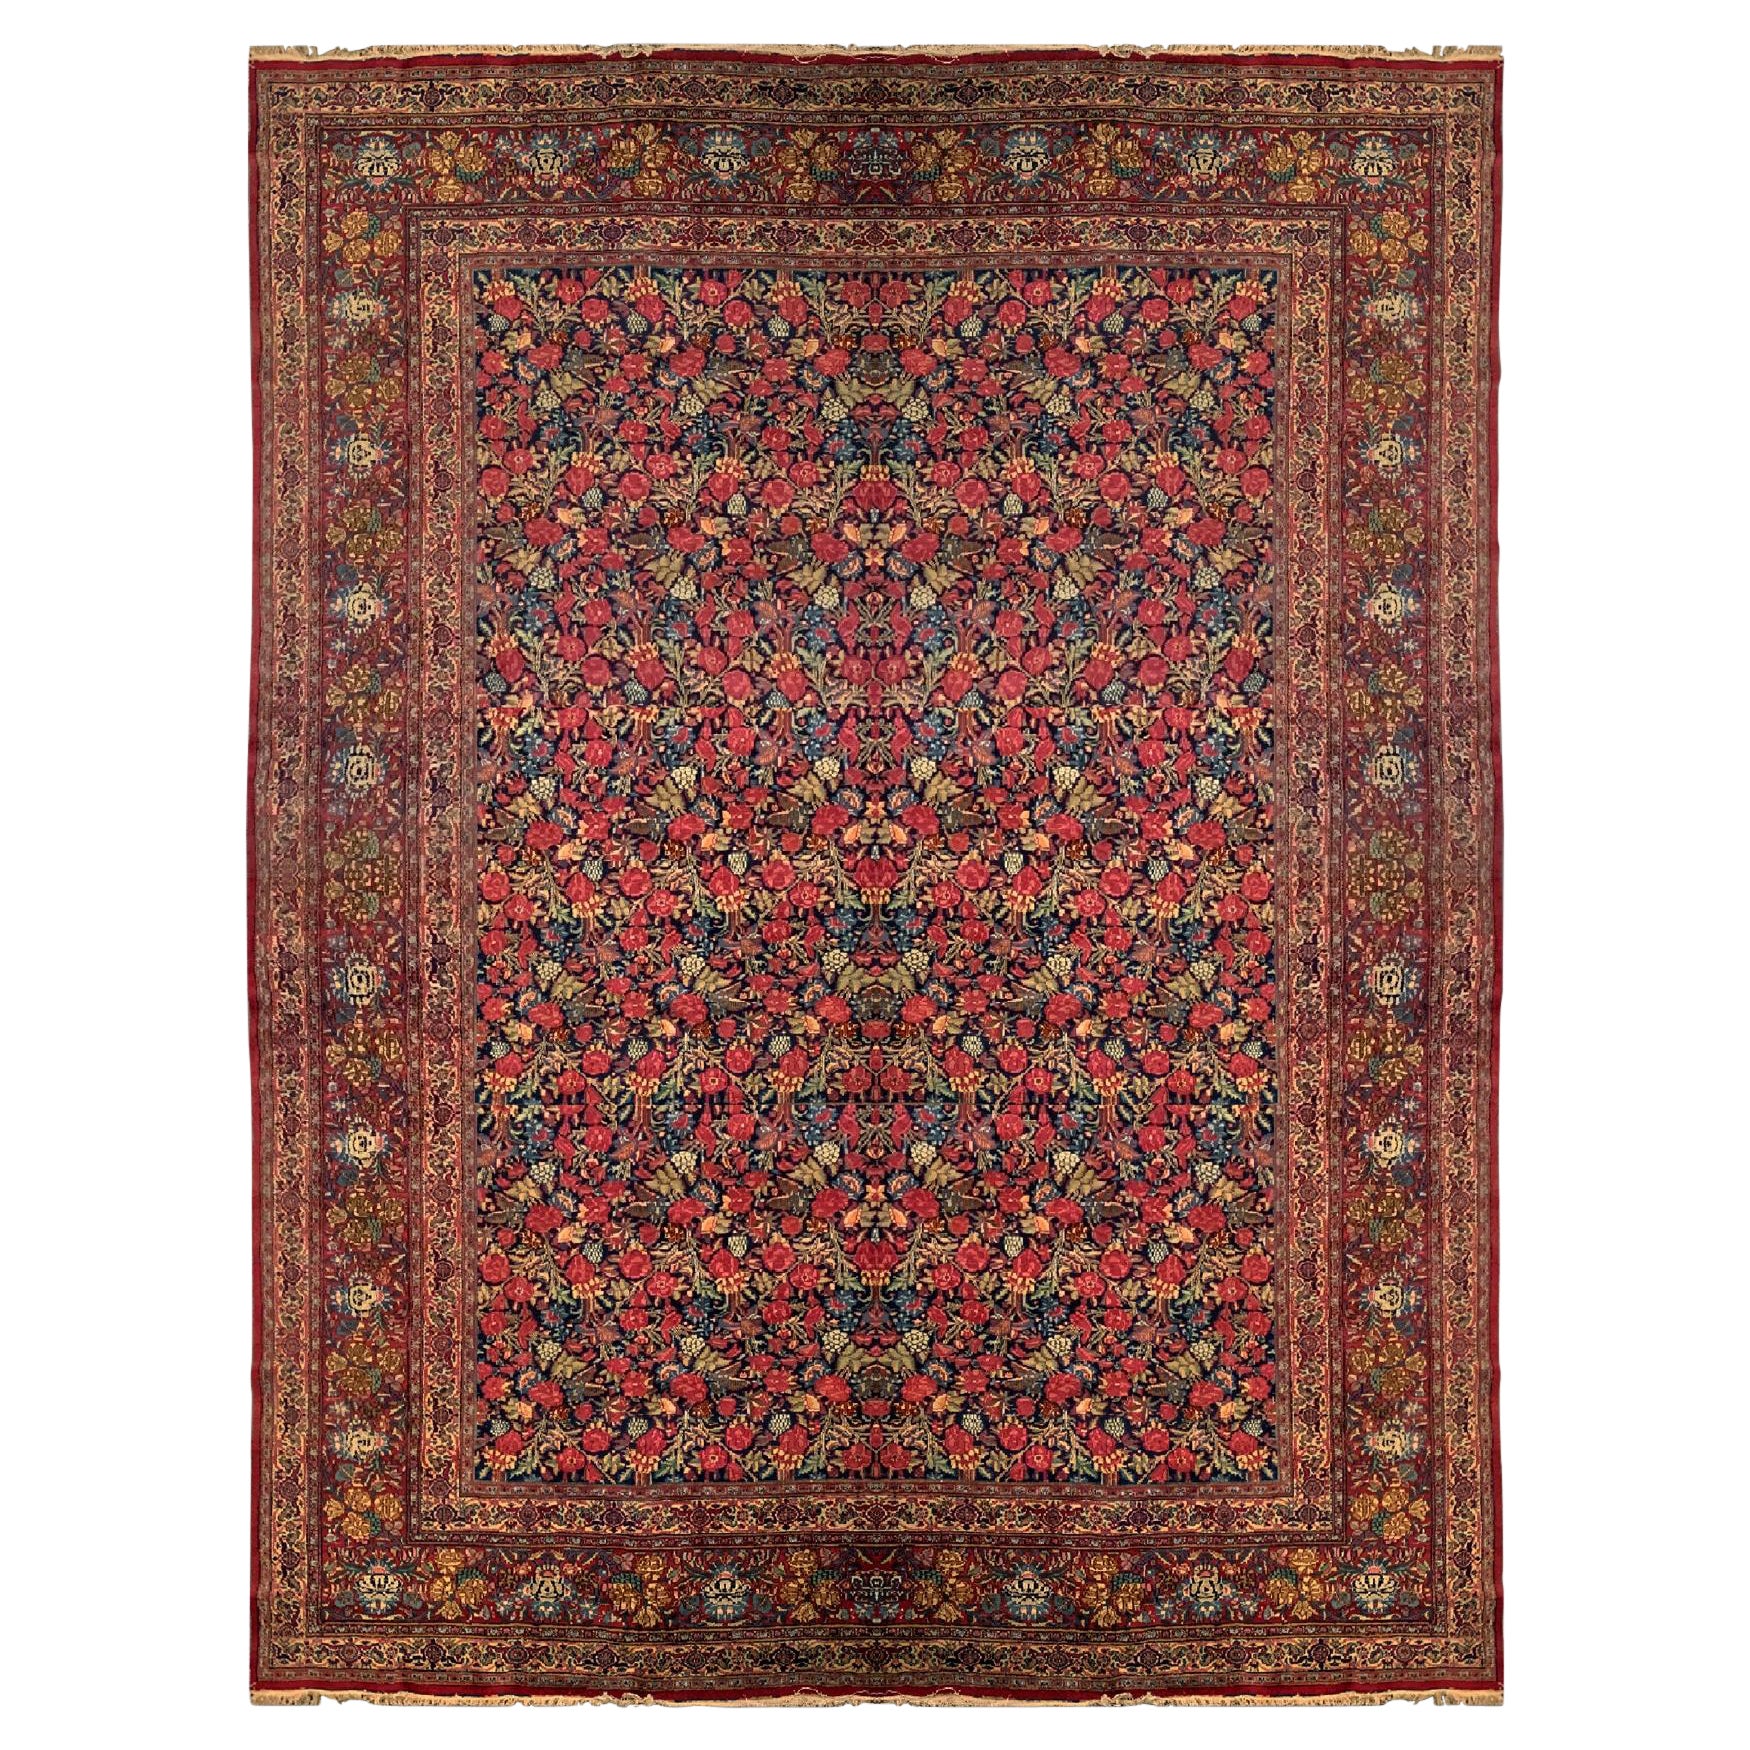 Oversize Carpet Antique Kerman Rug, Floral All Over Design For Sale